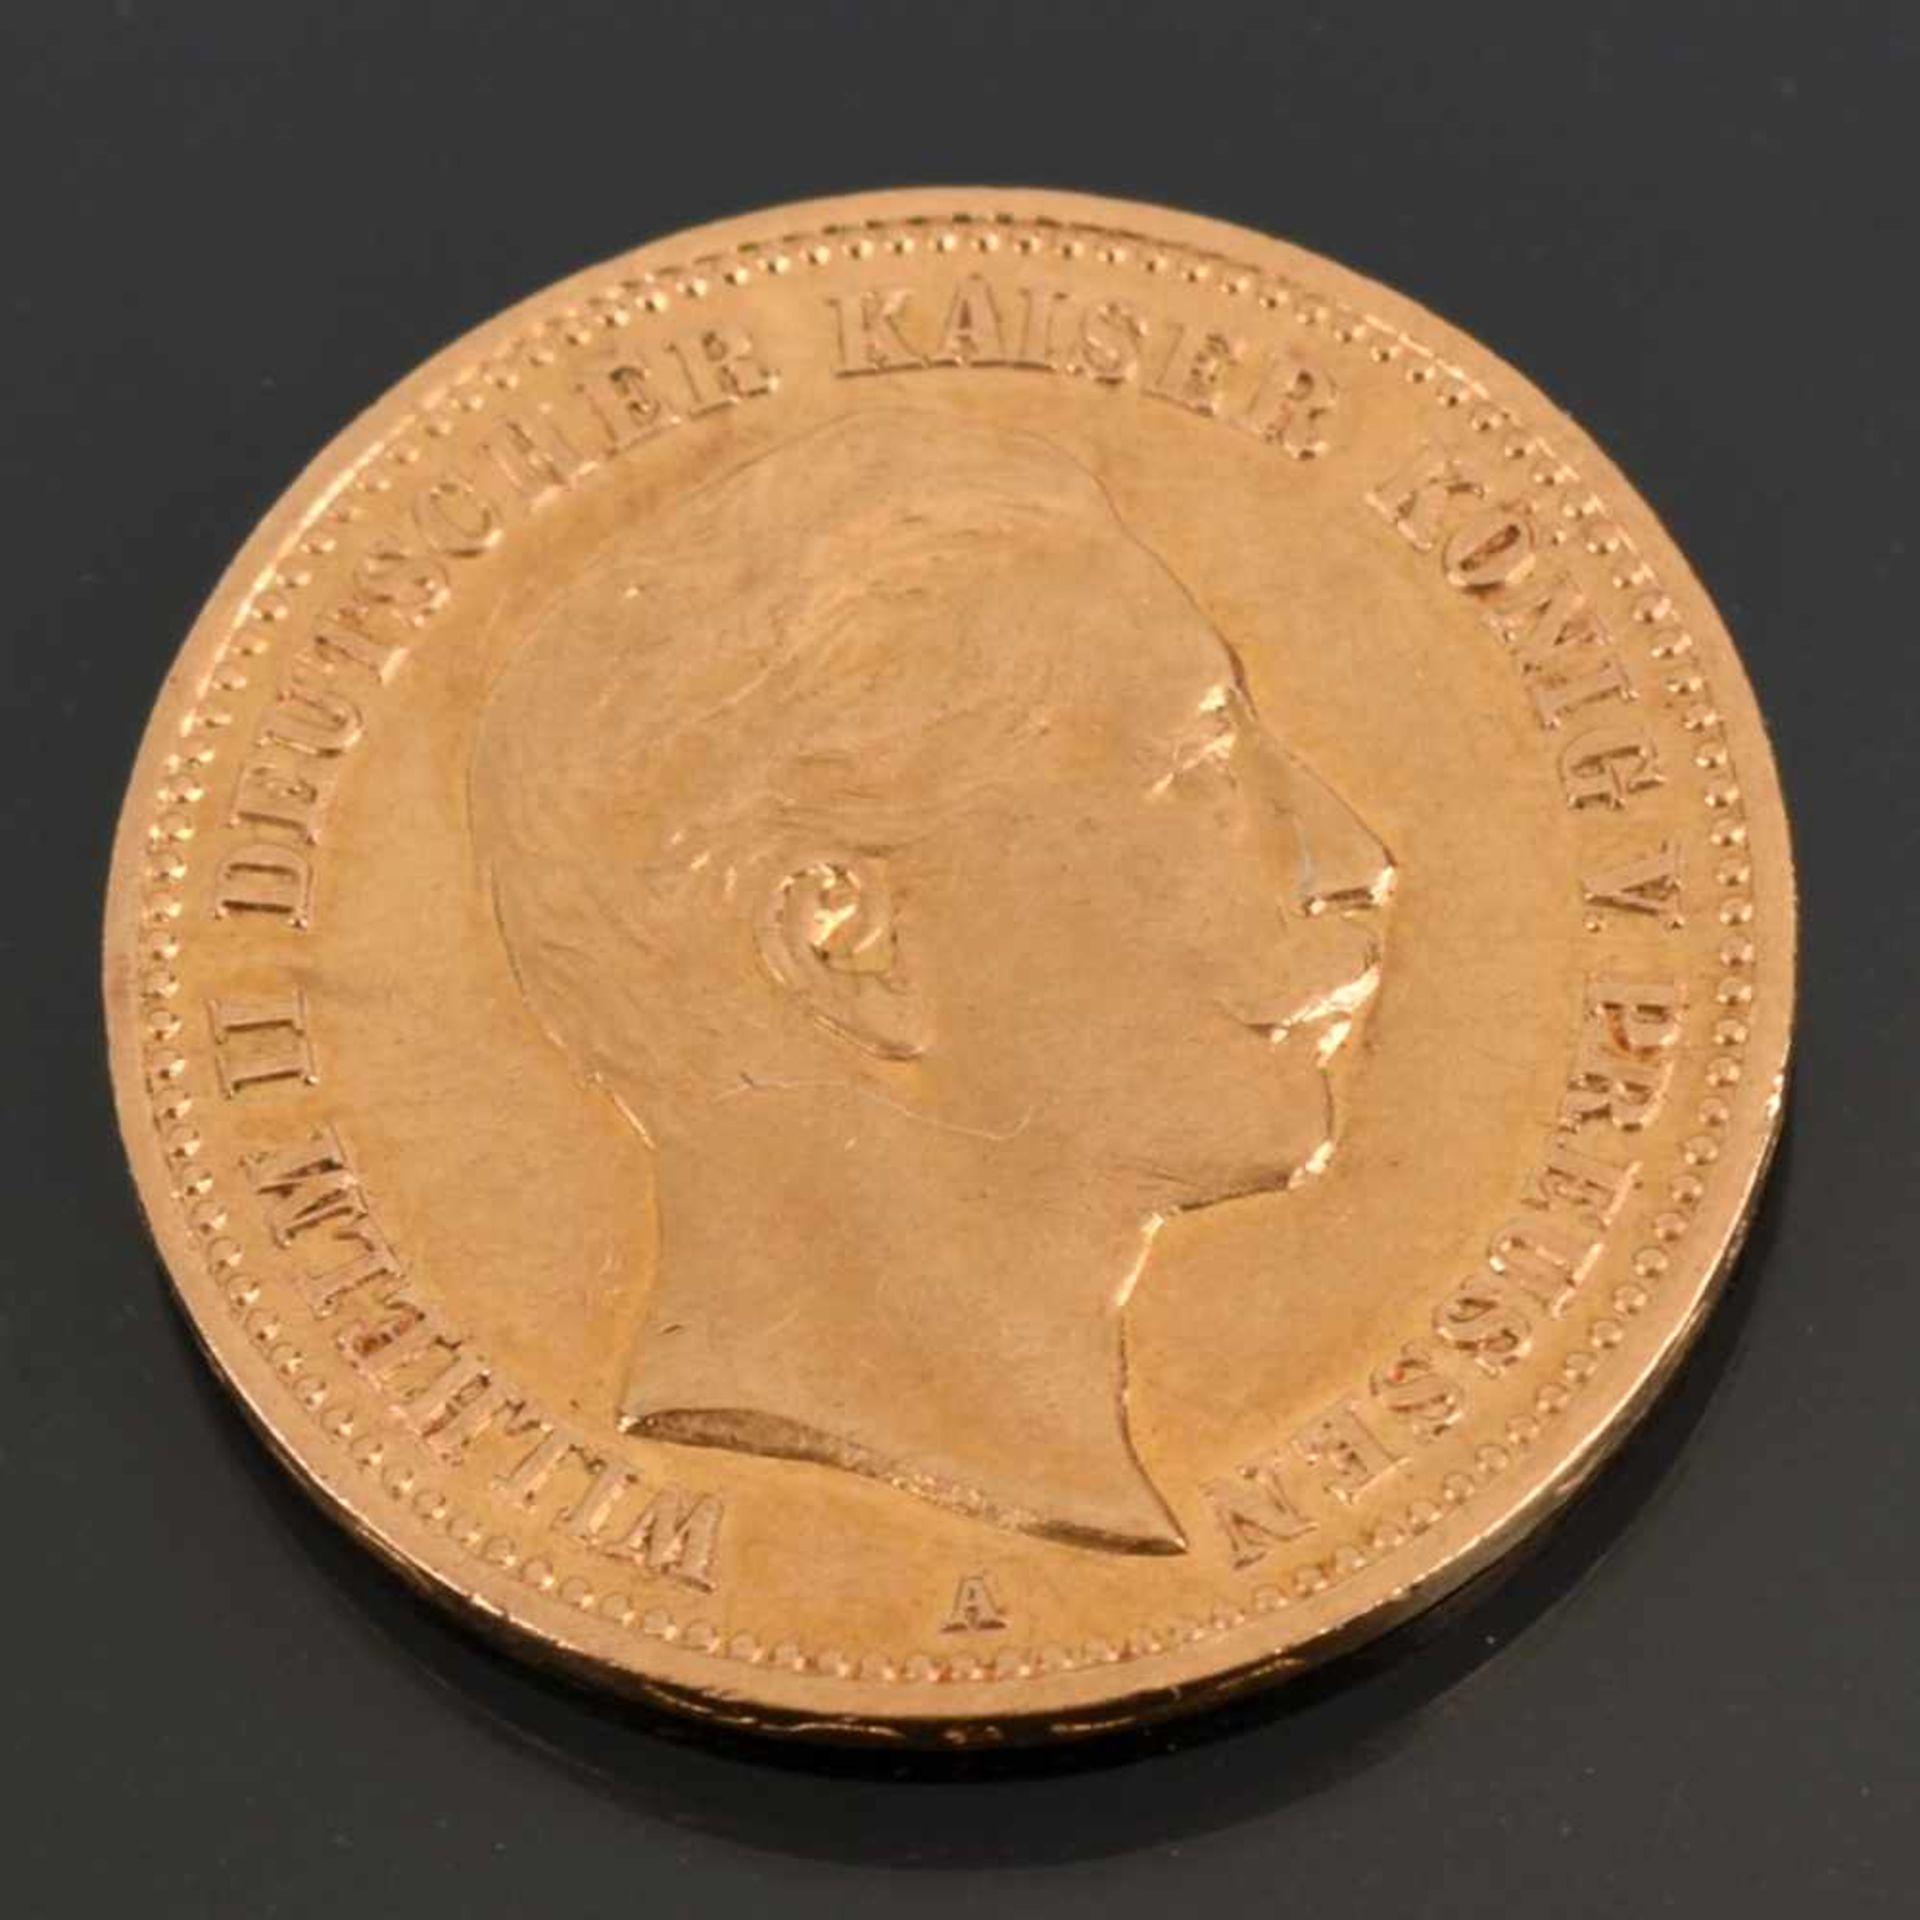 Goldmünze Kaiserreich - Preußen 1907 10 Mark in Gold, 900/1000, 3,98 g, D ca. 19,5 mm, av. Wilhelm - Bild 2 aus 3